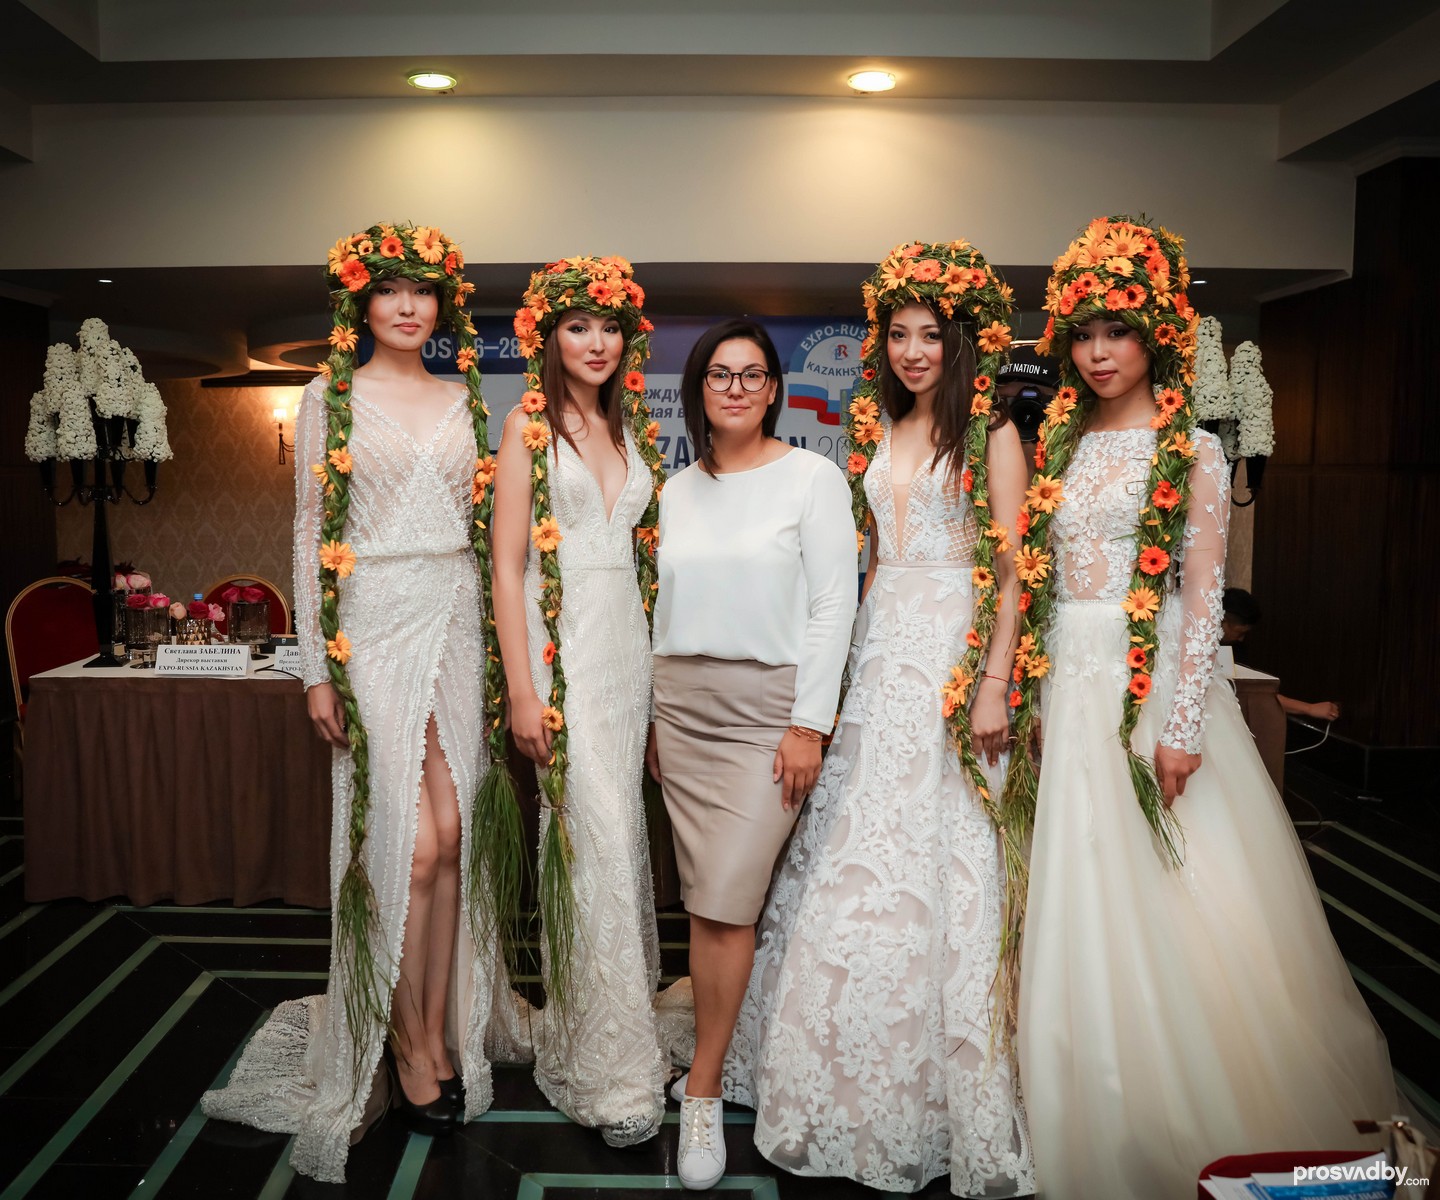 Огоромное спасибо Сауле Нурмухановой - двигателю свадебной моды в Алматы, которая неустанно удивляет невест самыми яркими, дерзкими, головокружительными свадебными платьями. Она самостоятельно ездит на европейские свадебные выставки и первая отбирает модели платьев, в которых будут блистать невесты. И в этой статье вы видите коллекцию платьев свадебного шоурума Bridal, которым владеет Сауле Нурмуханова. Портал Prosvadby.com рекомендует всем невестам Казахстана первым делом при поиске того самого свадебного платья заглянуть в шоурум Bridal!